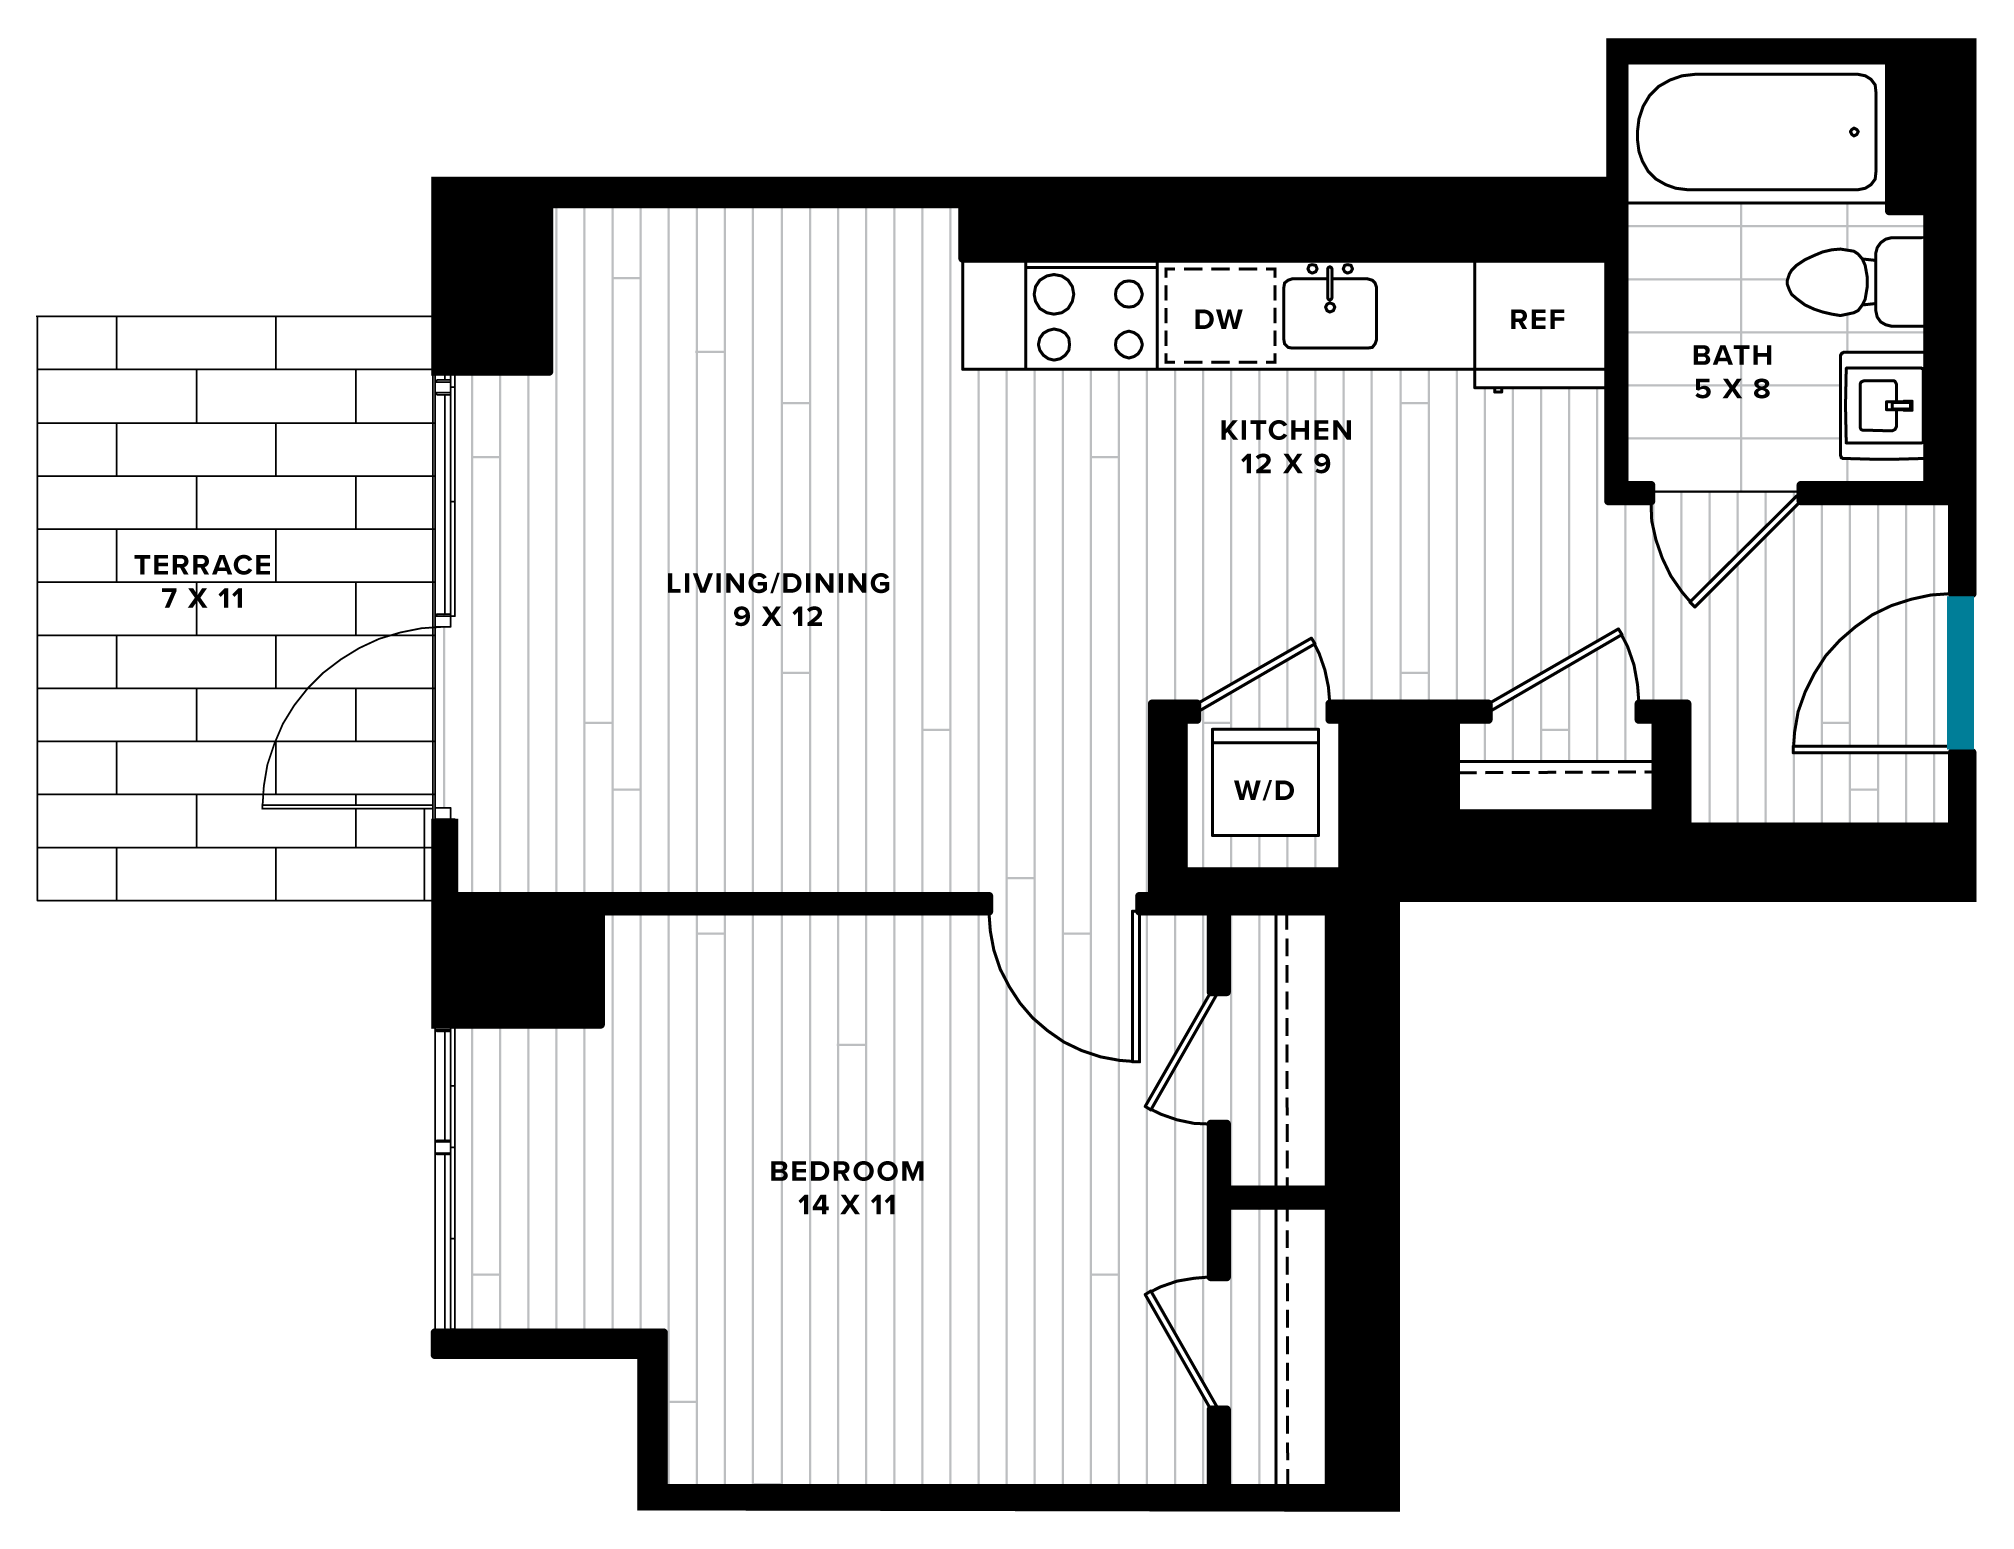 floorplan image of unit 0304